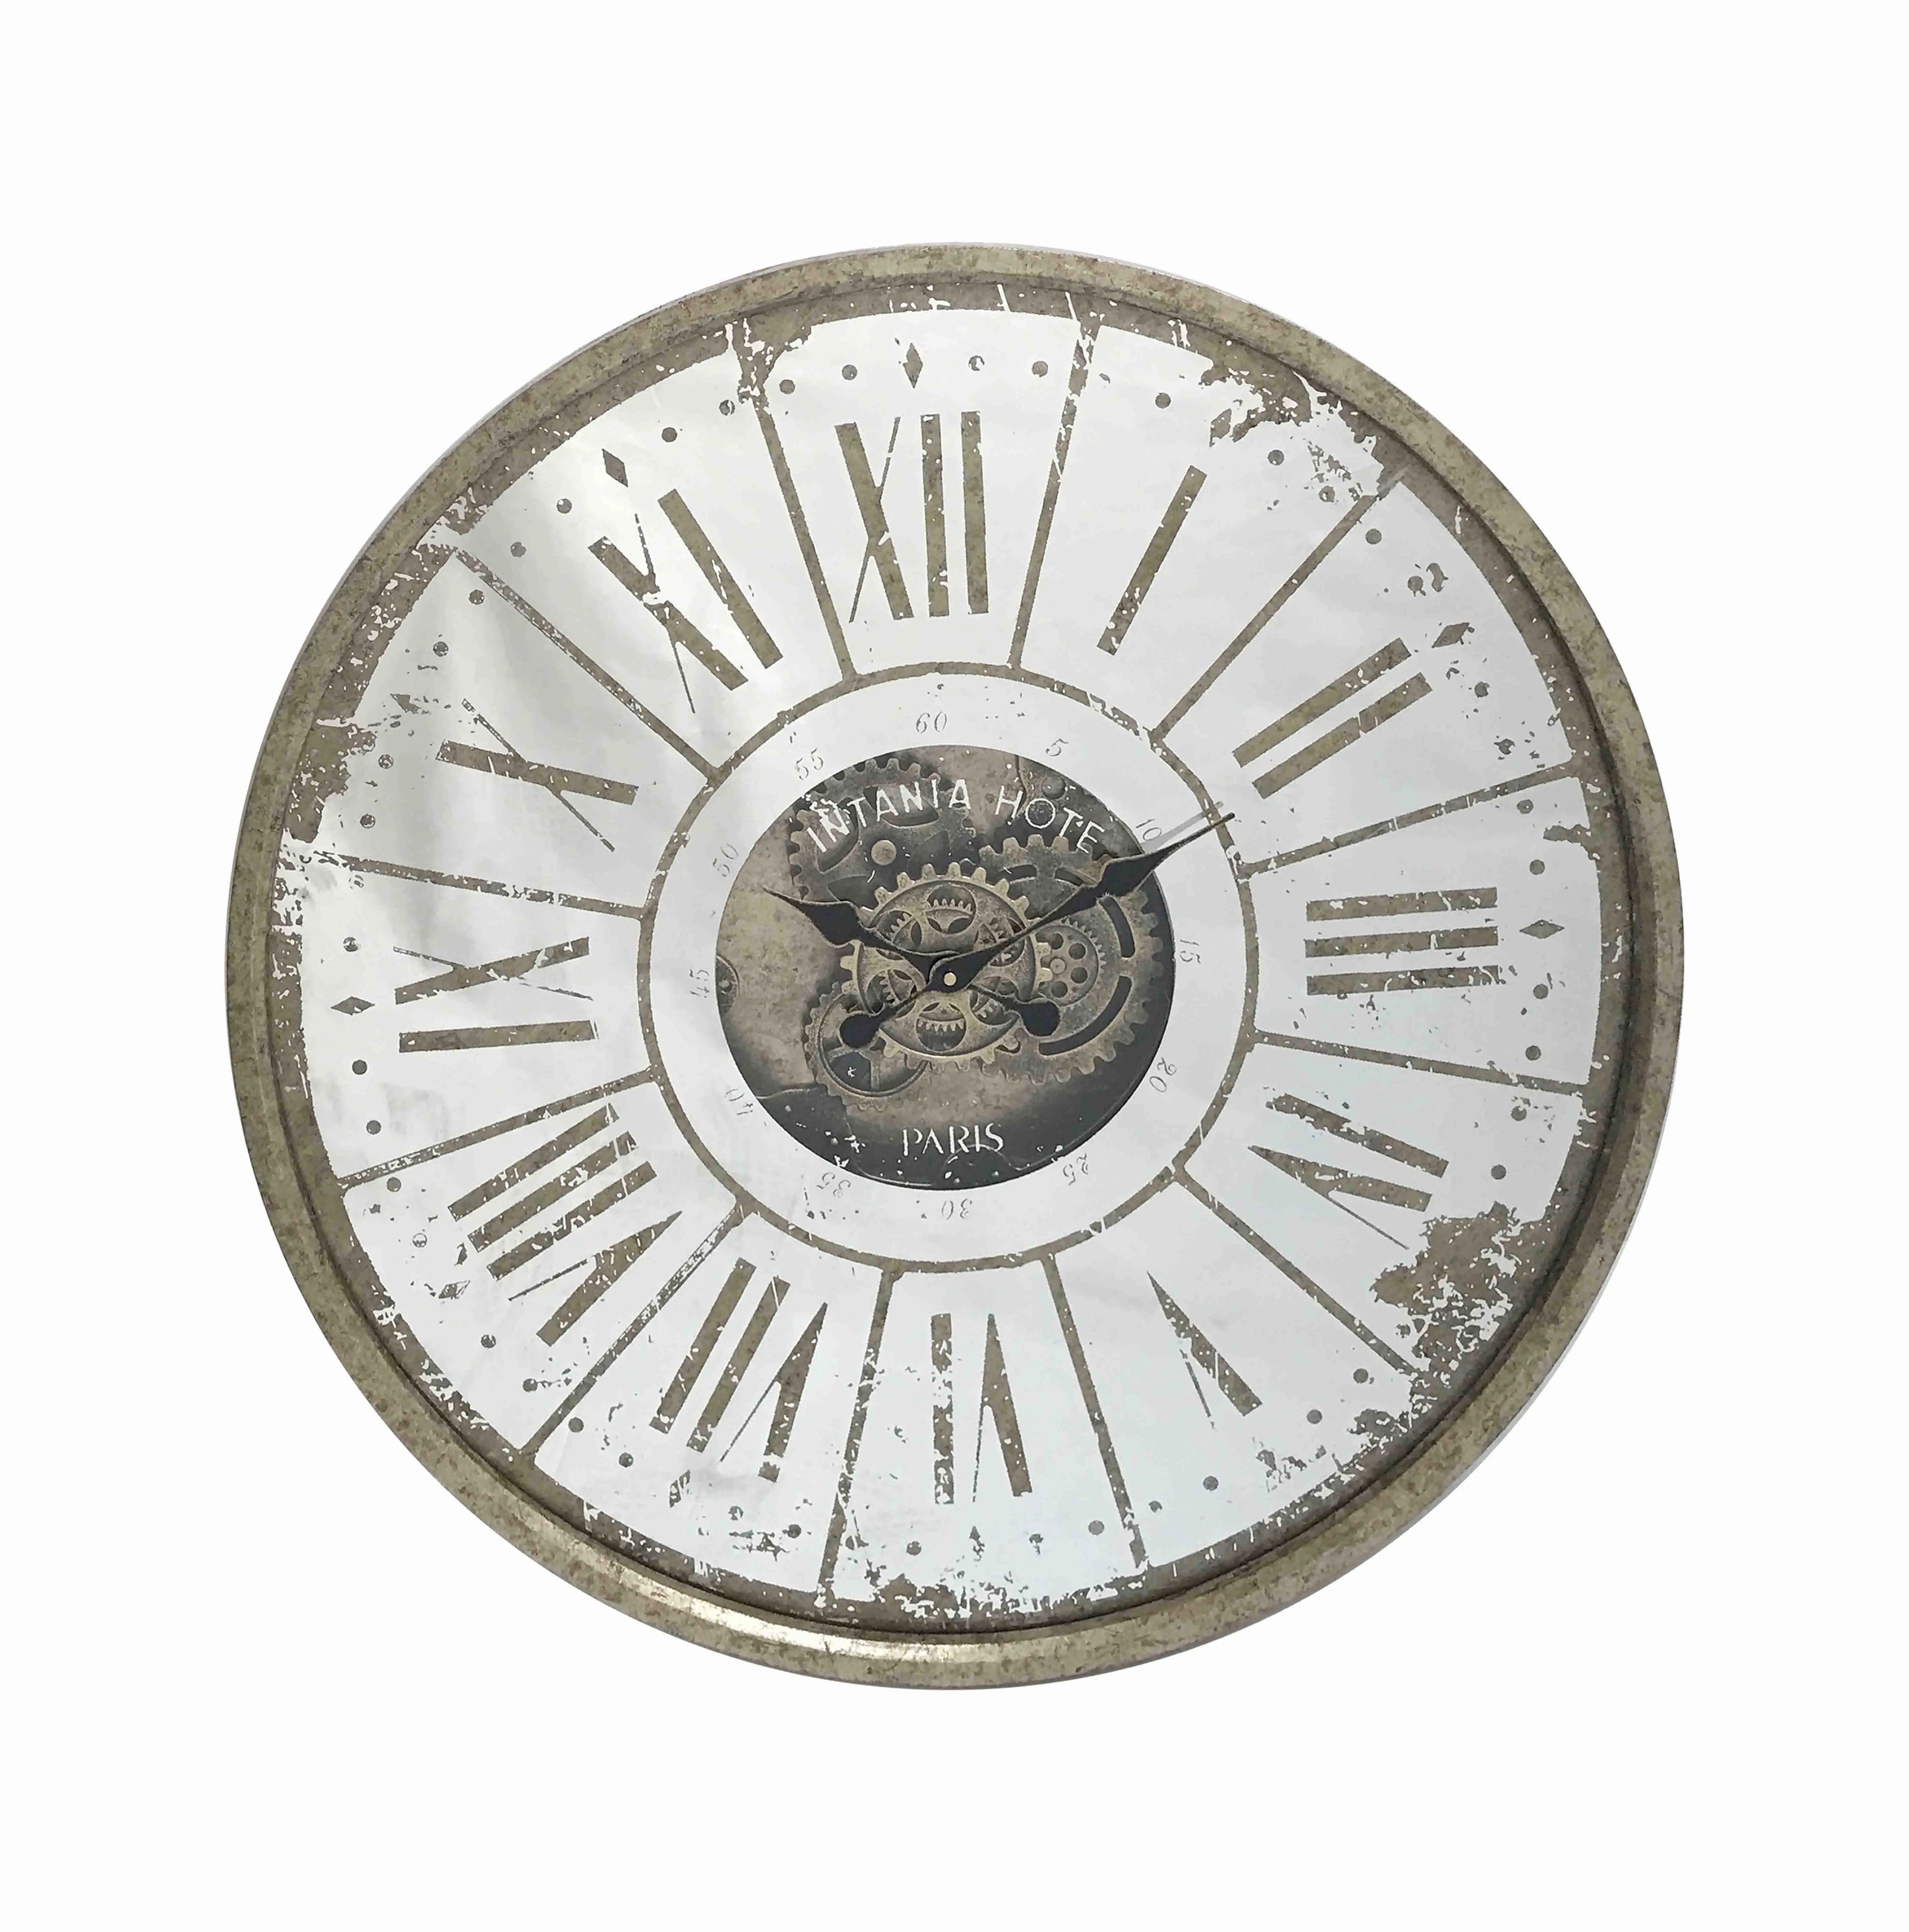 Große antike dekorative Spiegel wanduhr und Getriebe mechanismus mit römischen Ziffern Quarz wanduhr